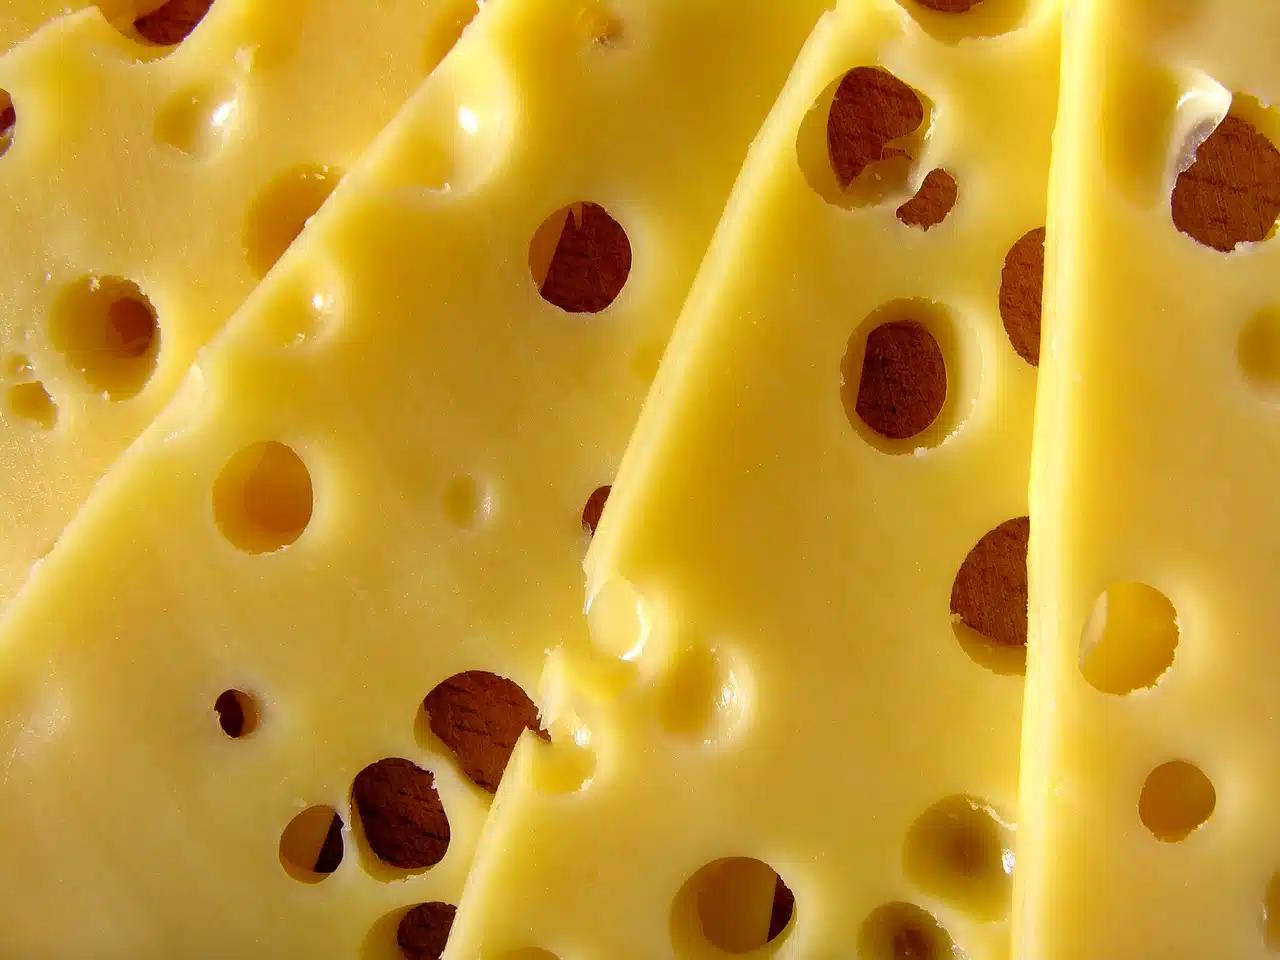 definicion de queso - Qué es el queso según la OMS